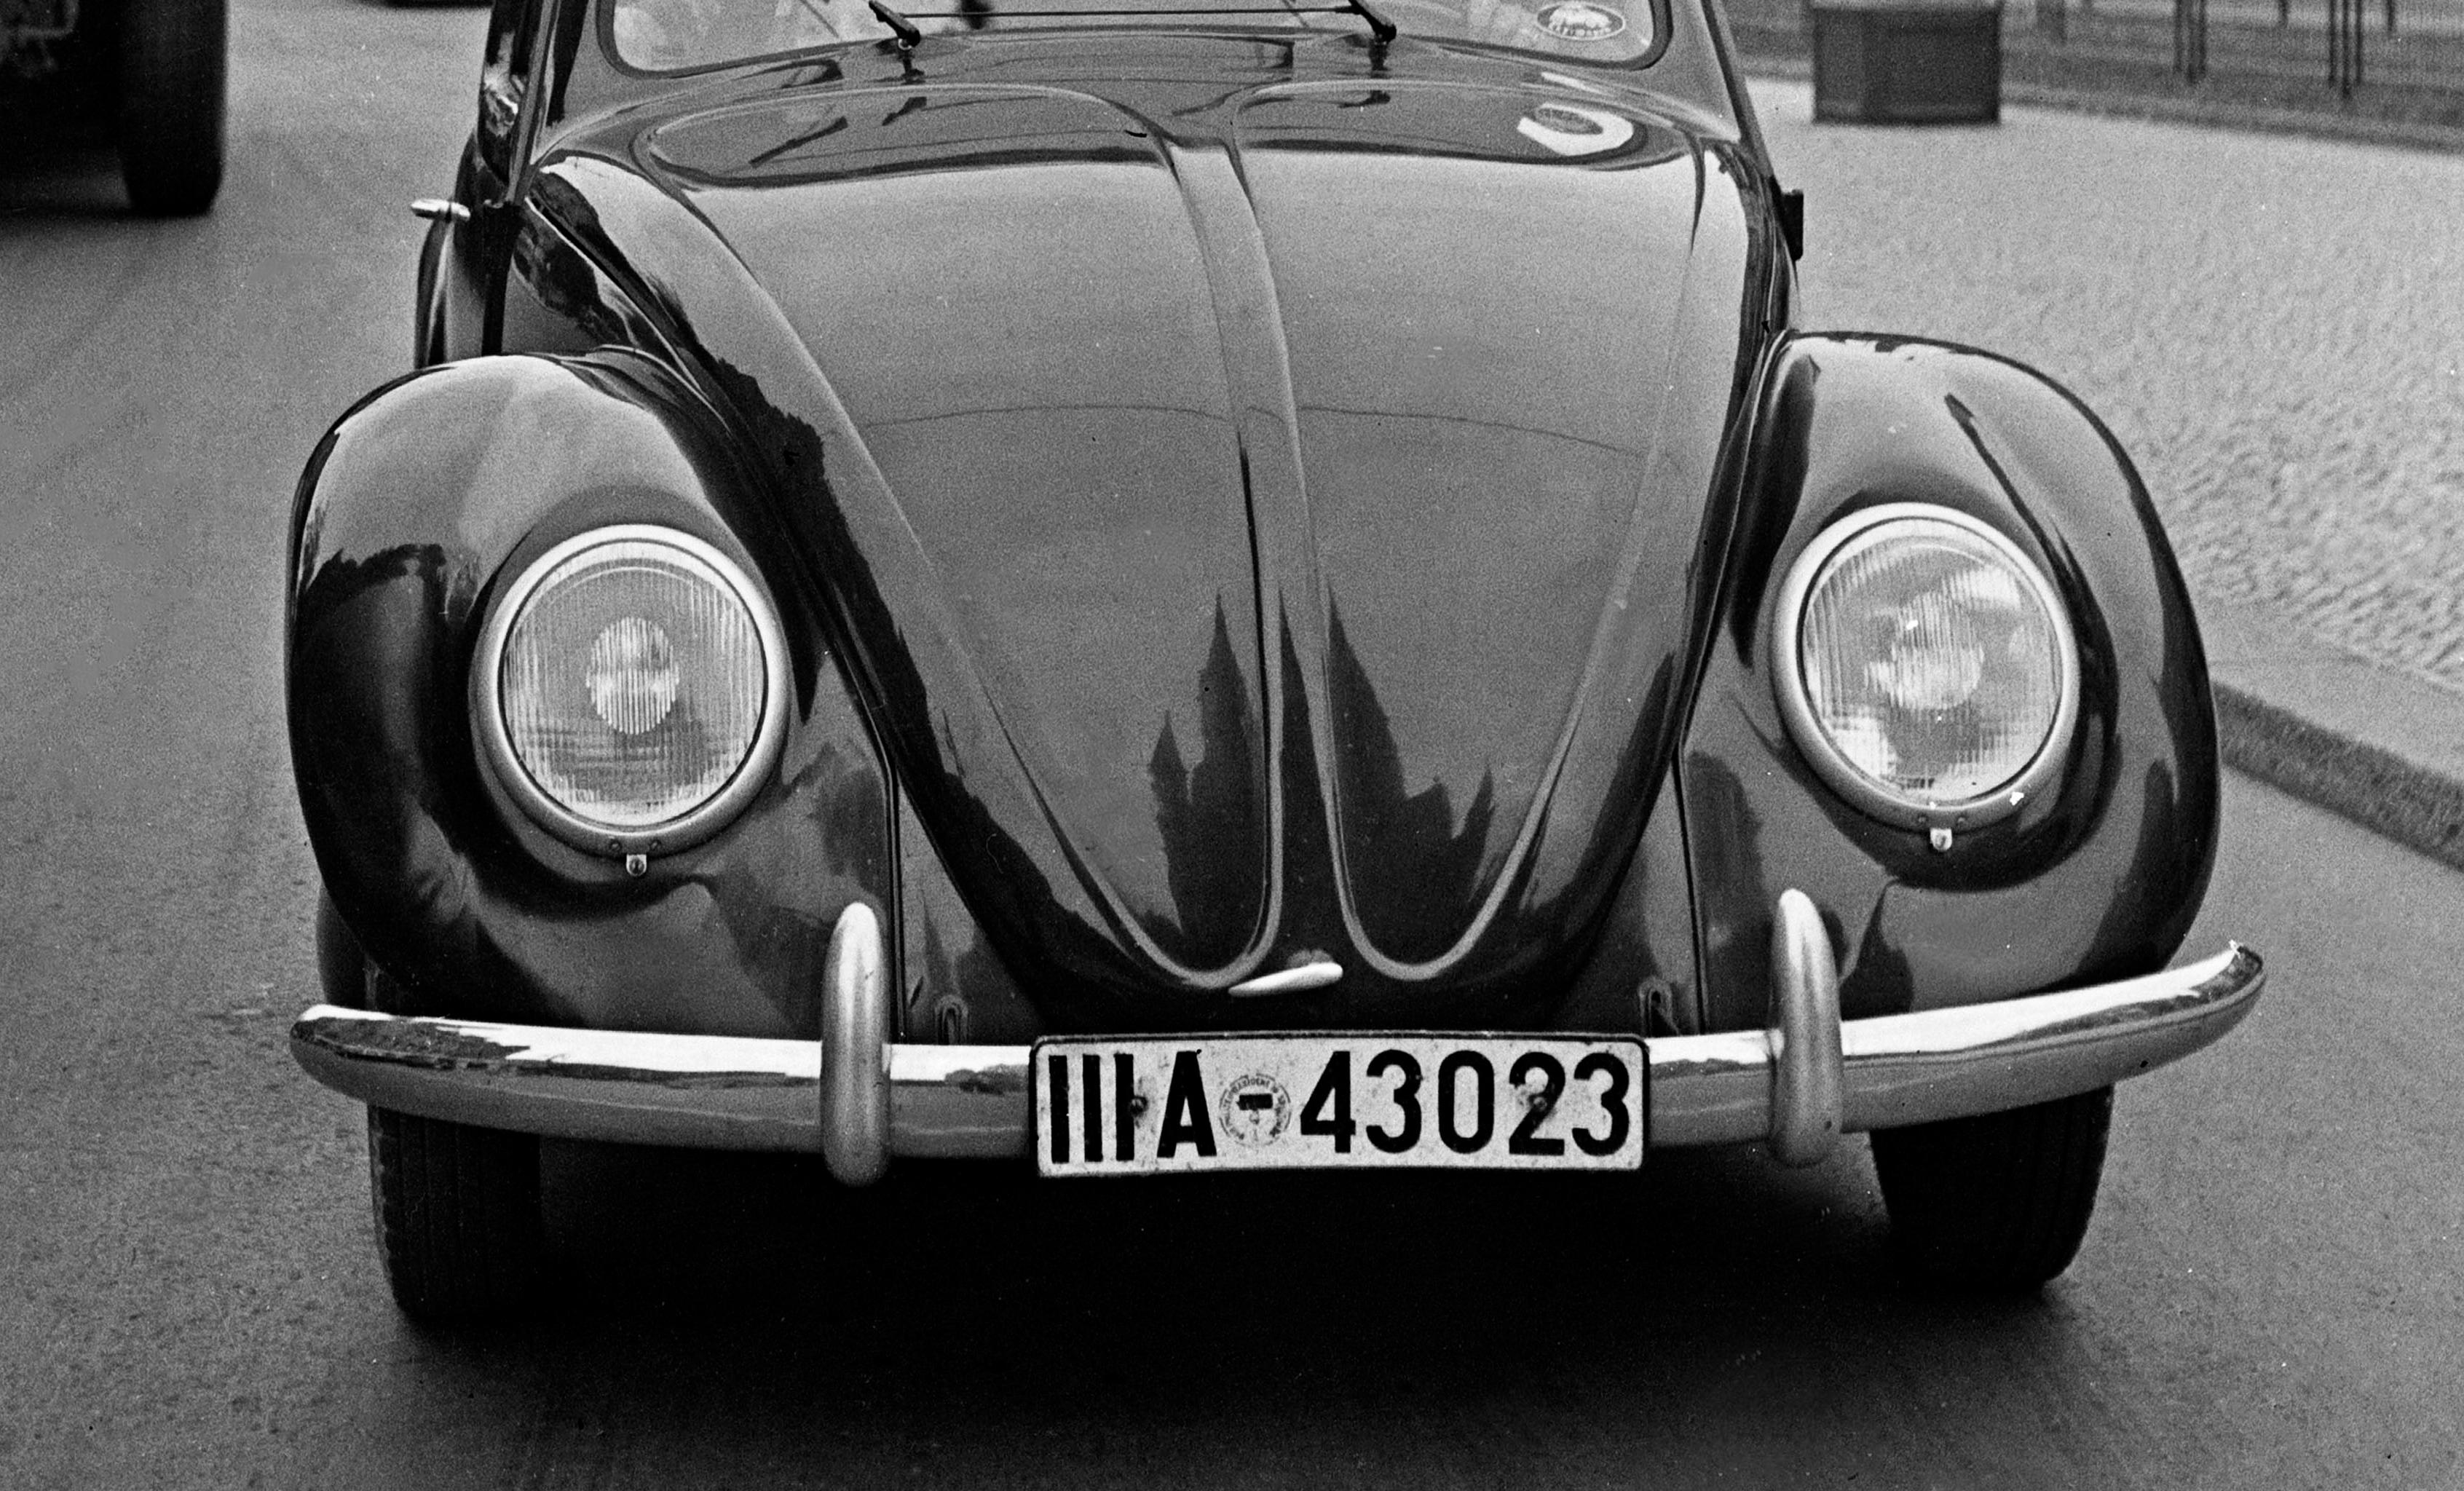 Le scarabée Volkswagen dans les rues de Berlin, Allemagne 1939 Imprimé plus tard  - Photograph de Karl Heinrich Lämmel